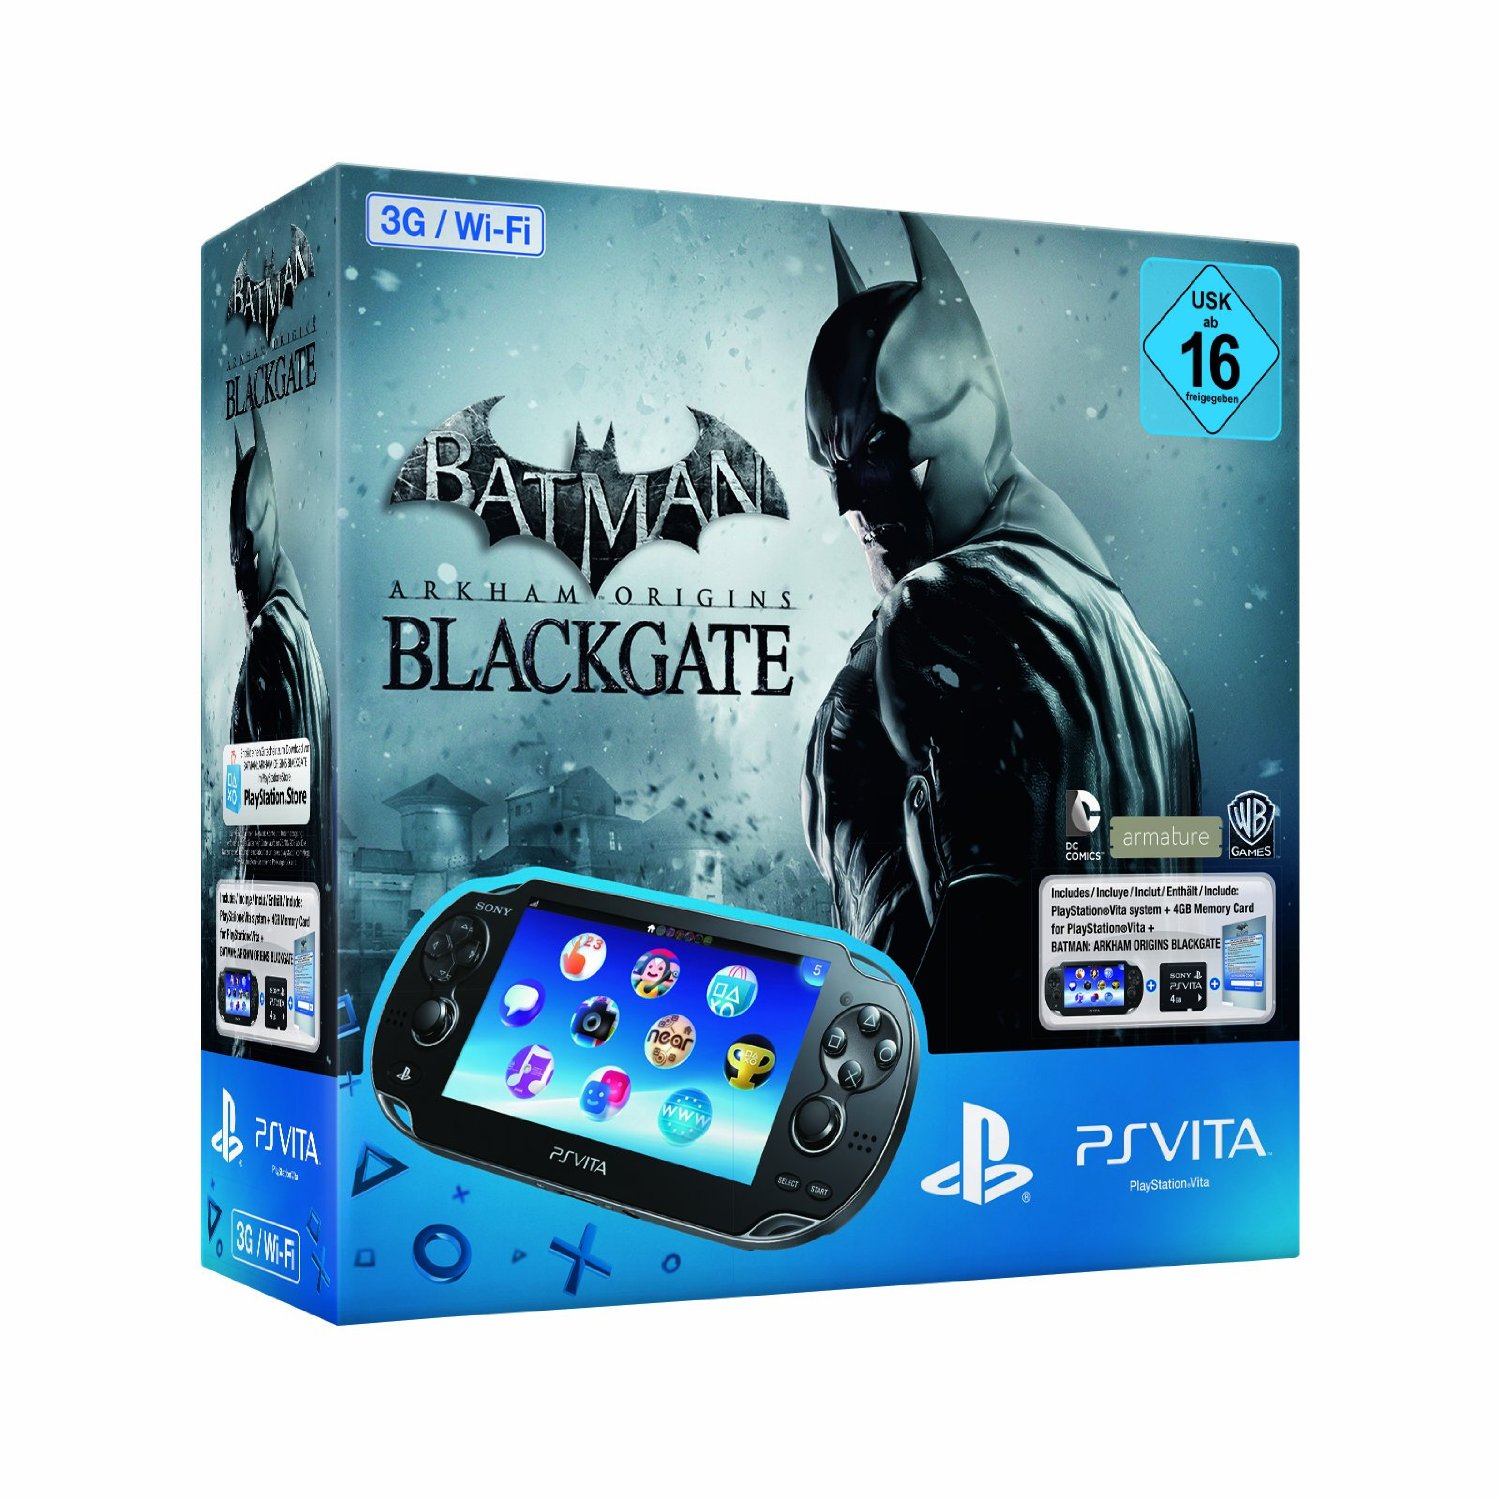 Batman vita. Batman Arkham Origins PS Vita. Batman Arkham Origins Blackgate PS Vita. Batman Blackgate PS Vita. Ps3 Bundle Batman.